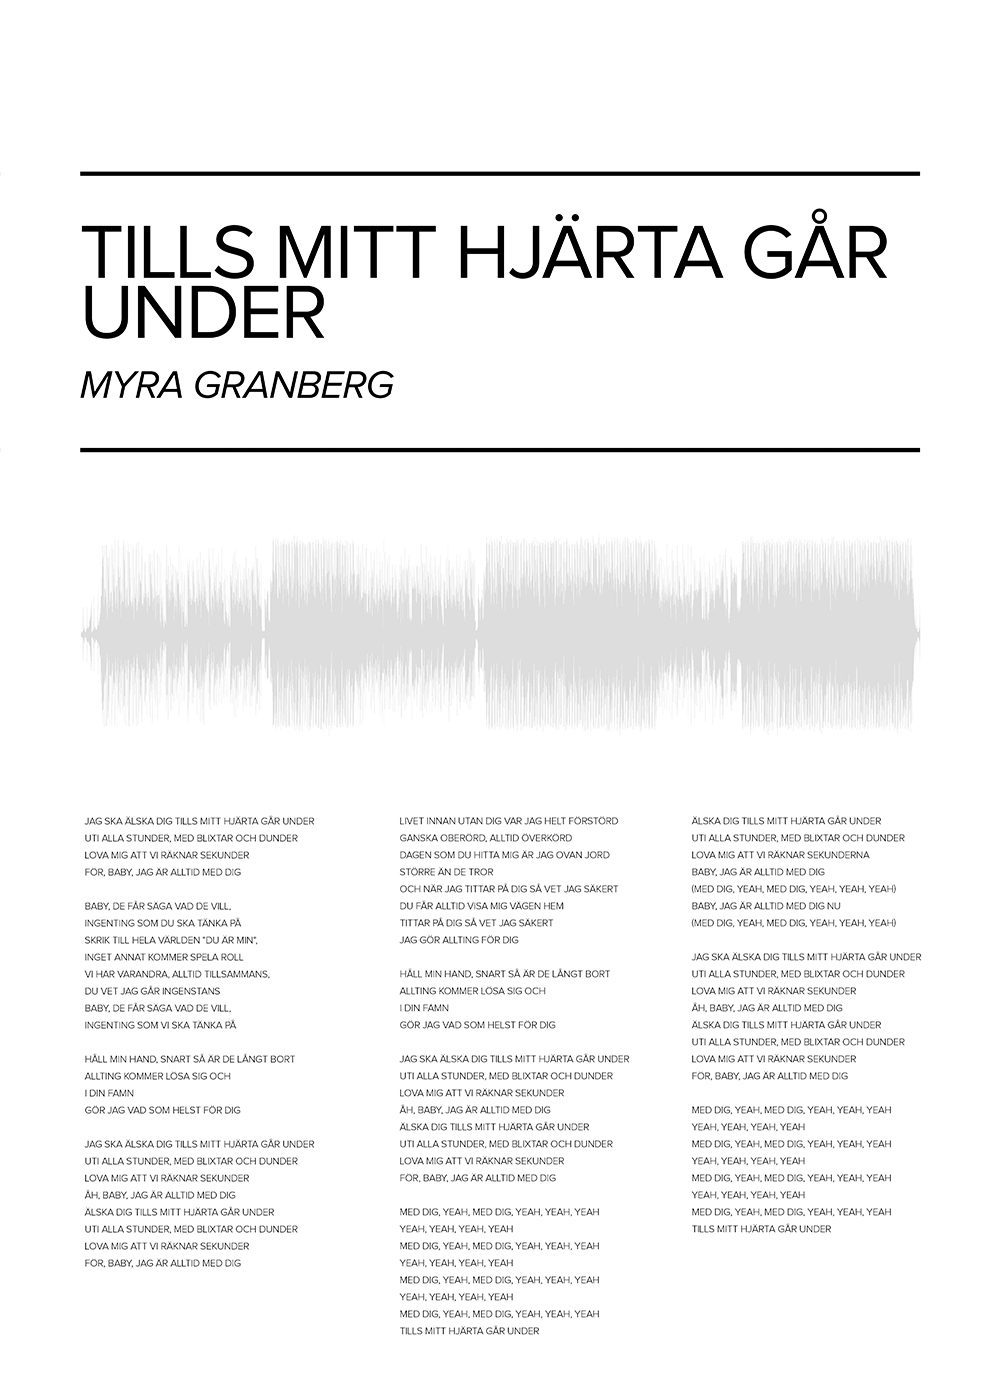 Myra Granberg - Tills mitt hjarta gar under poster